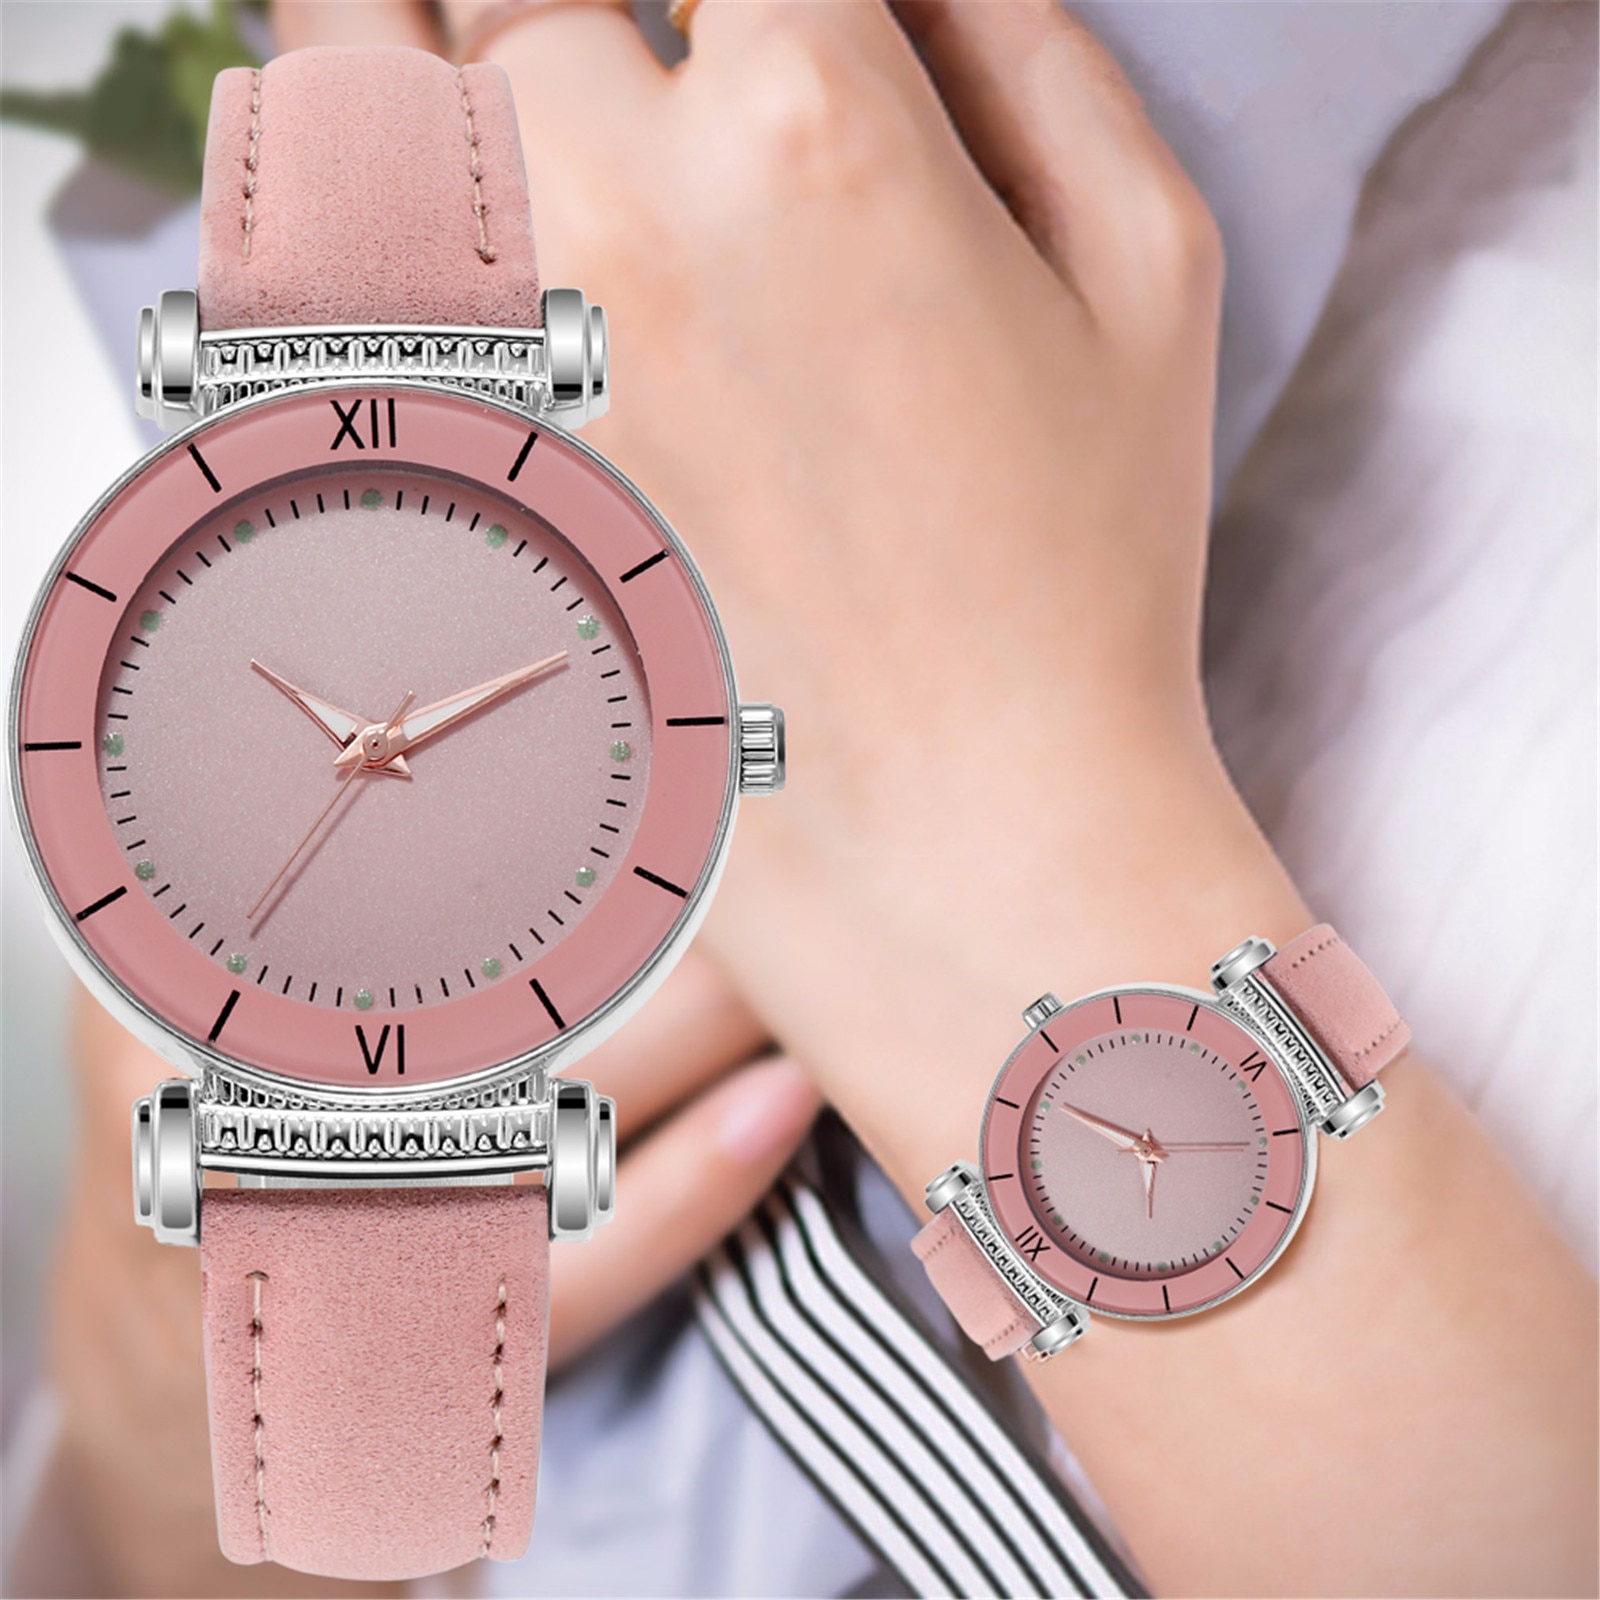 Vrouwen Luxe Horloge Quartz Casual Vrouwelijke Quartz Horloges Lederen Band Sky Dames Meisjes Klok Analoge Uur Reloj Horloge